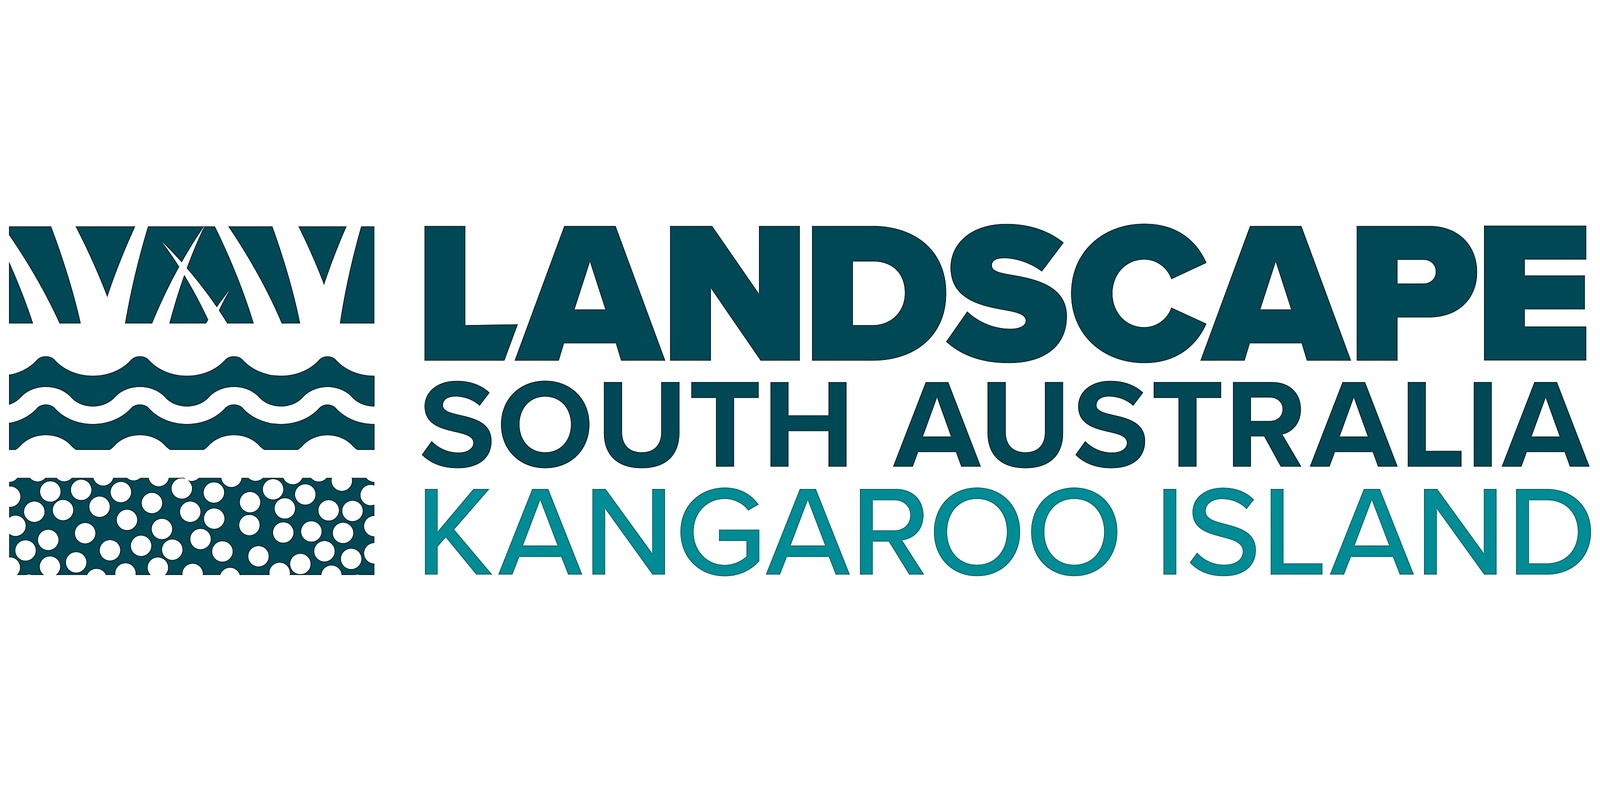 Kangaroo Island Landscape Board's banner